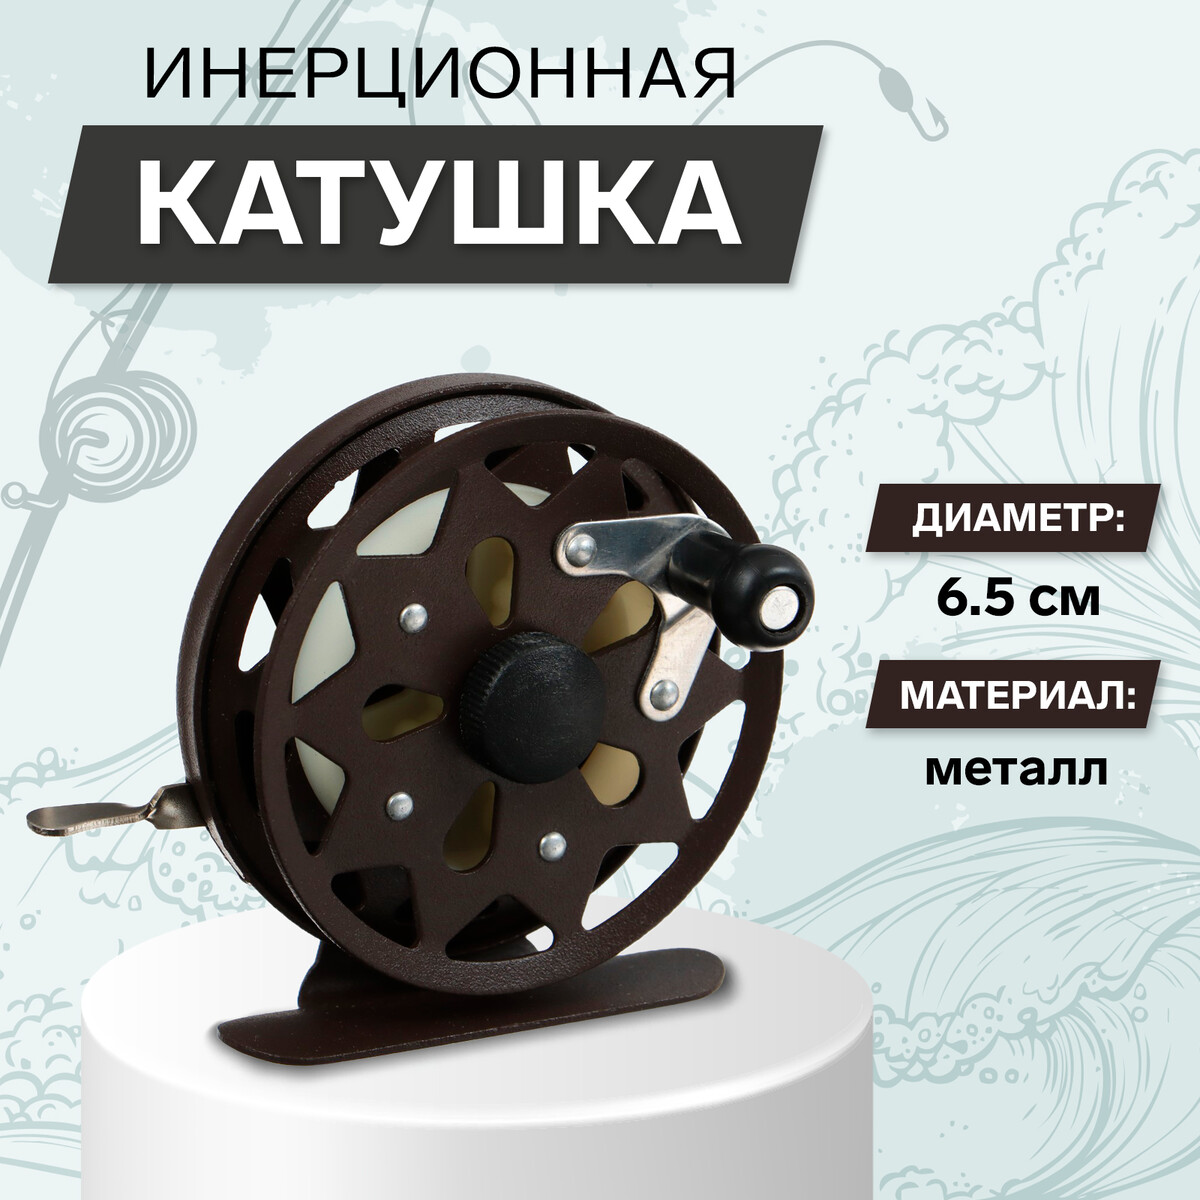 Катушка инерционная, металл, диаметр 6.5 см, цвет темно-коричневый,tl65 площадка торцевая металл установочный диаметр 120 мм viento 120пм